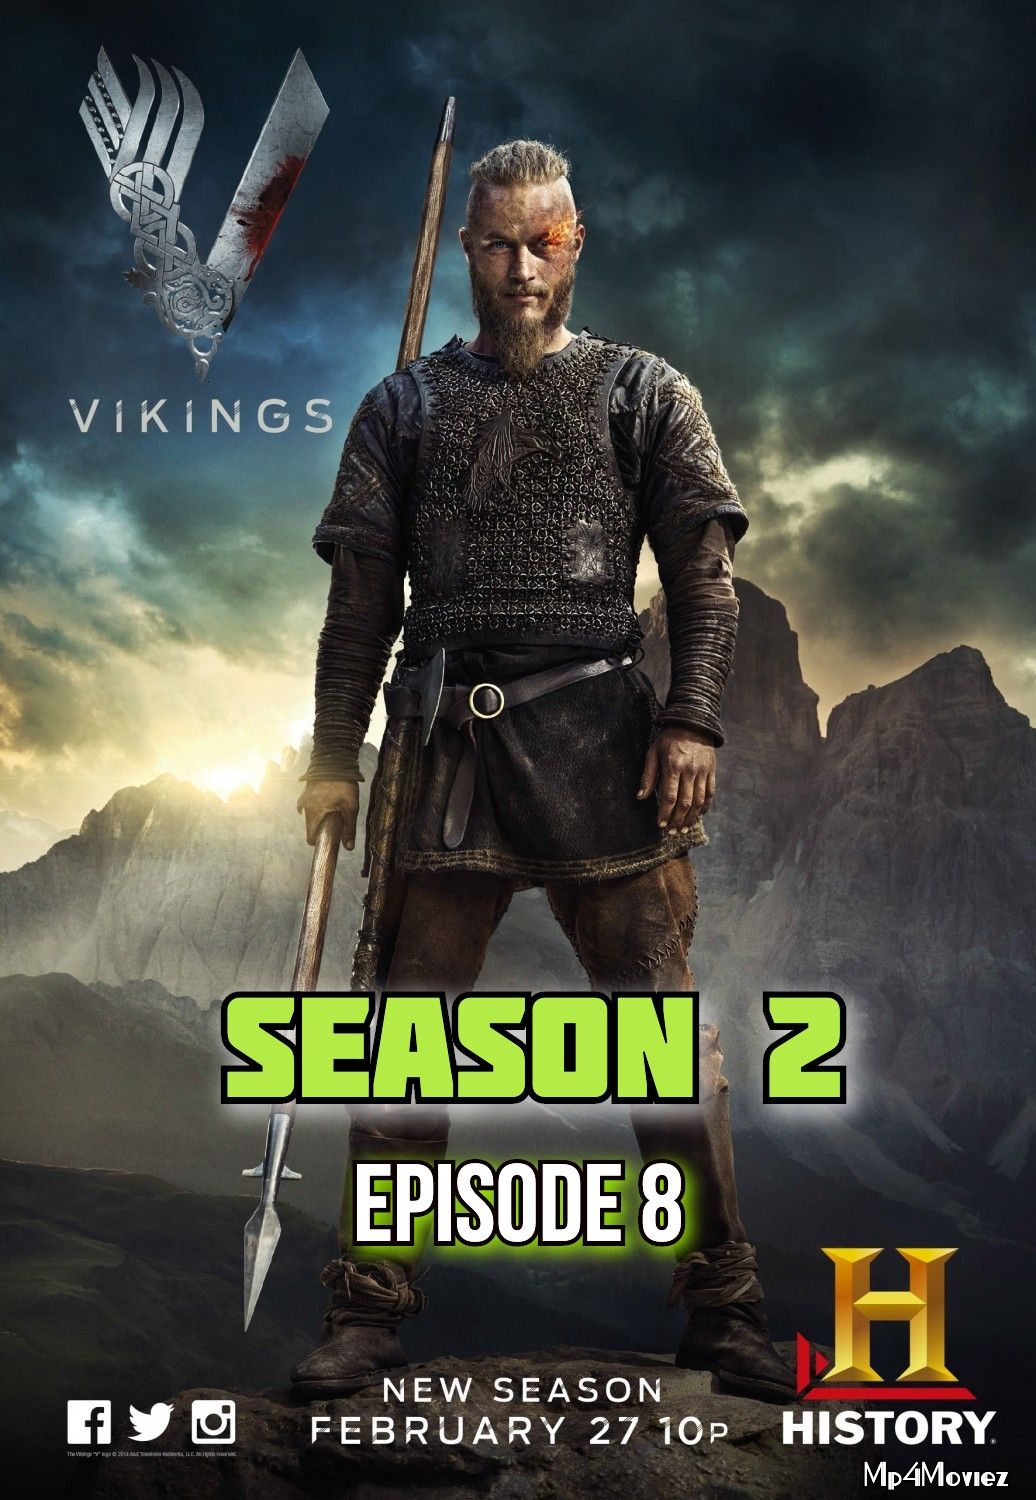 Vikings S02E08 (Boneless) Hindi Dubbed download full movie